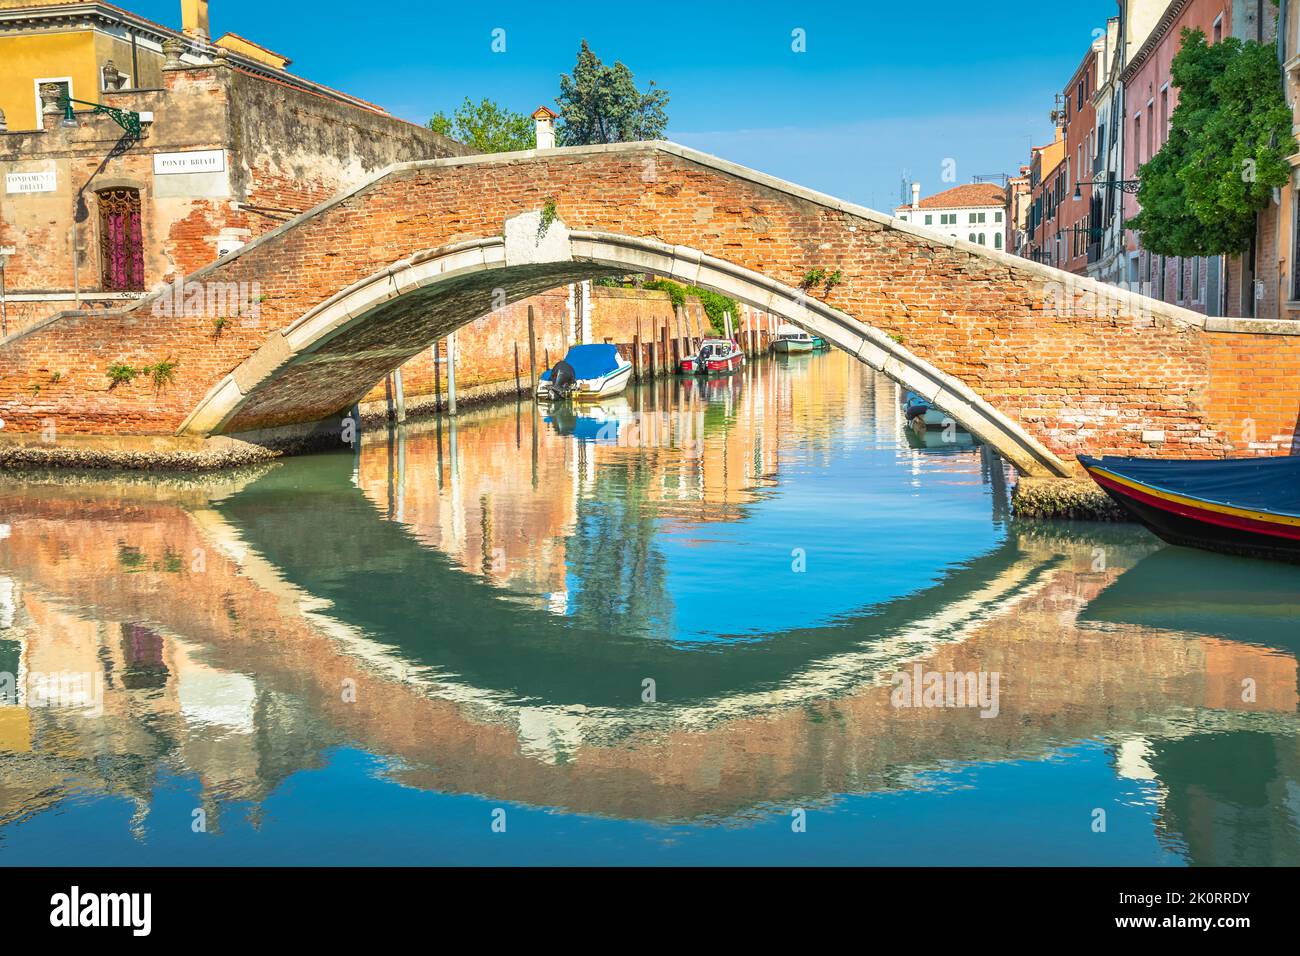 Paisible canal scénaraire dans la romantique Venise au printemps, Italie Banque D'Images